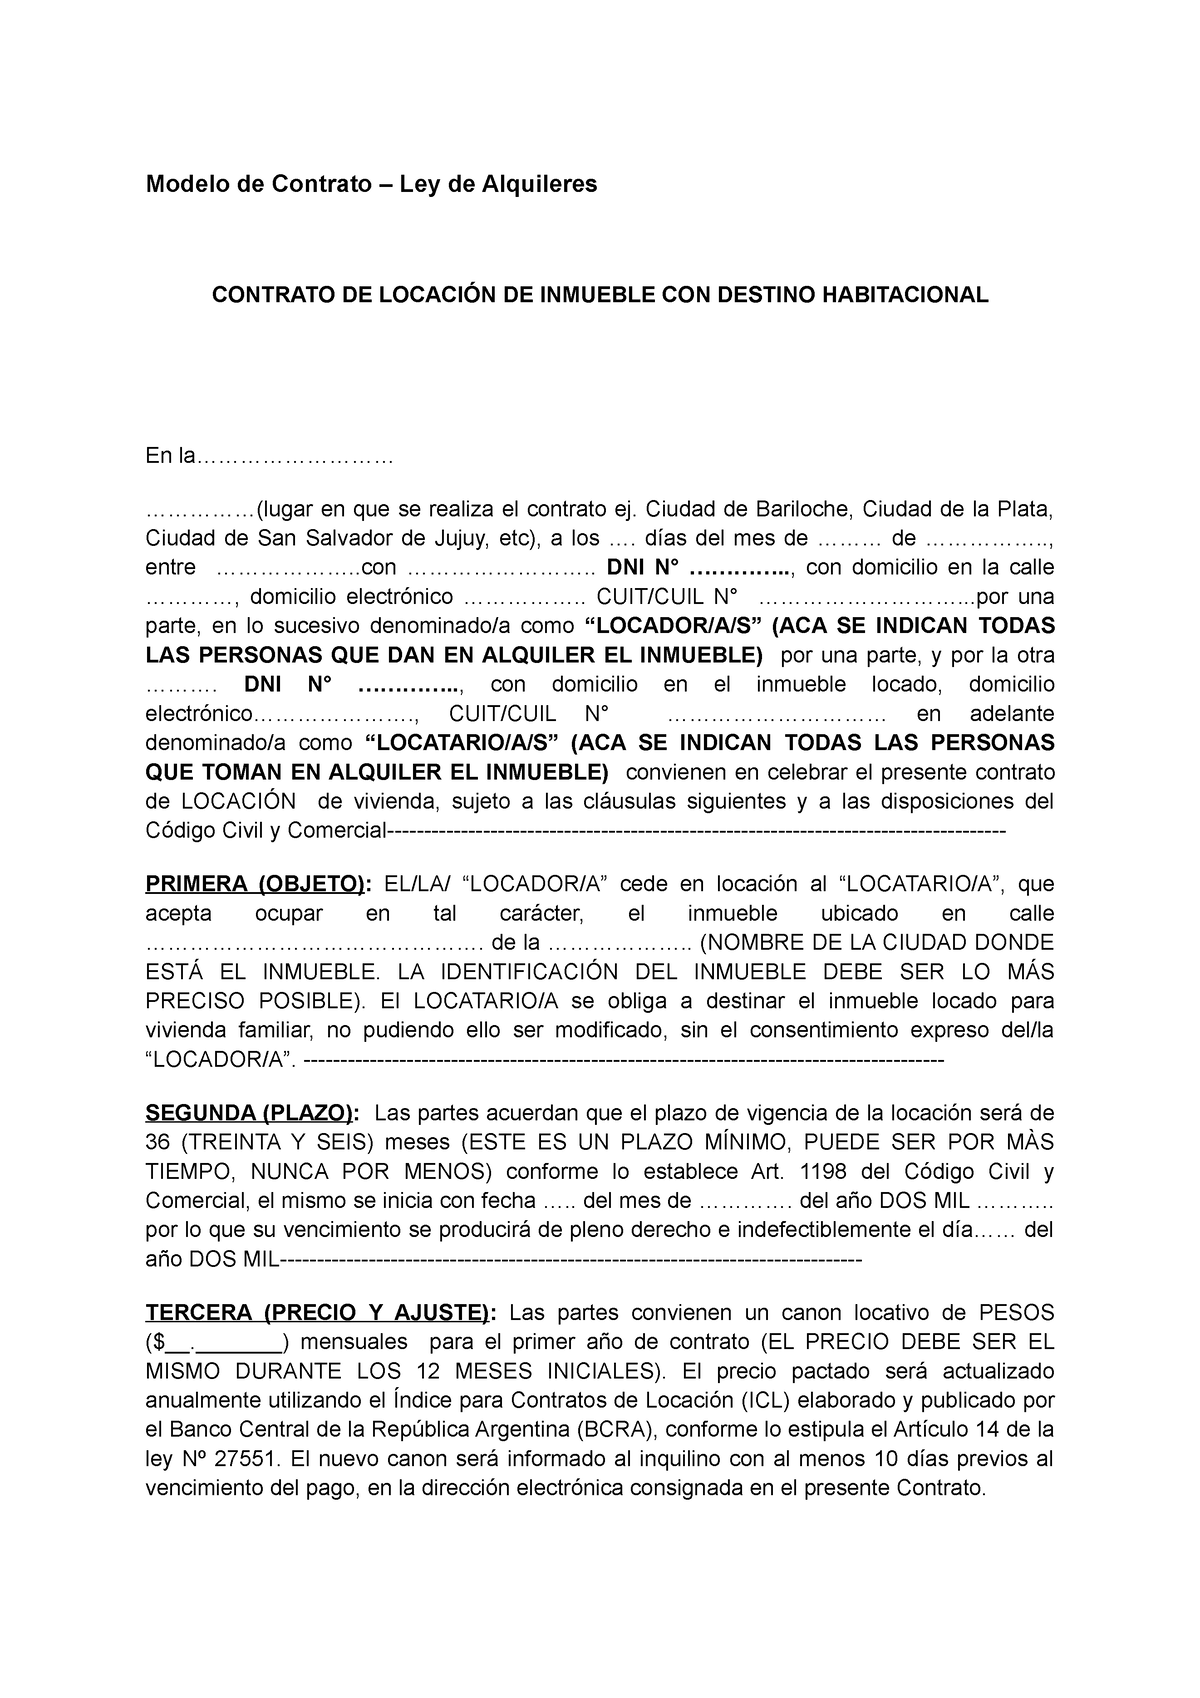 Modelo De Contrato De Locacion Modelo De Contrato Ley De Alquileres Contrato De LocaciÓn De 3387